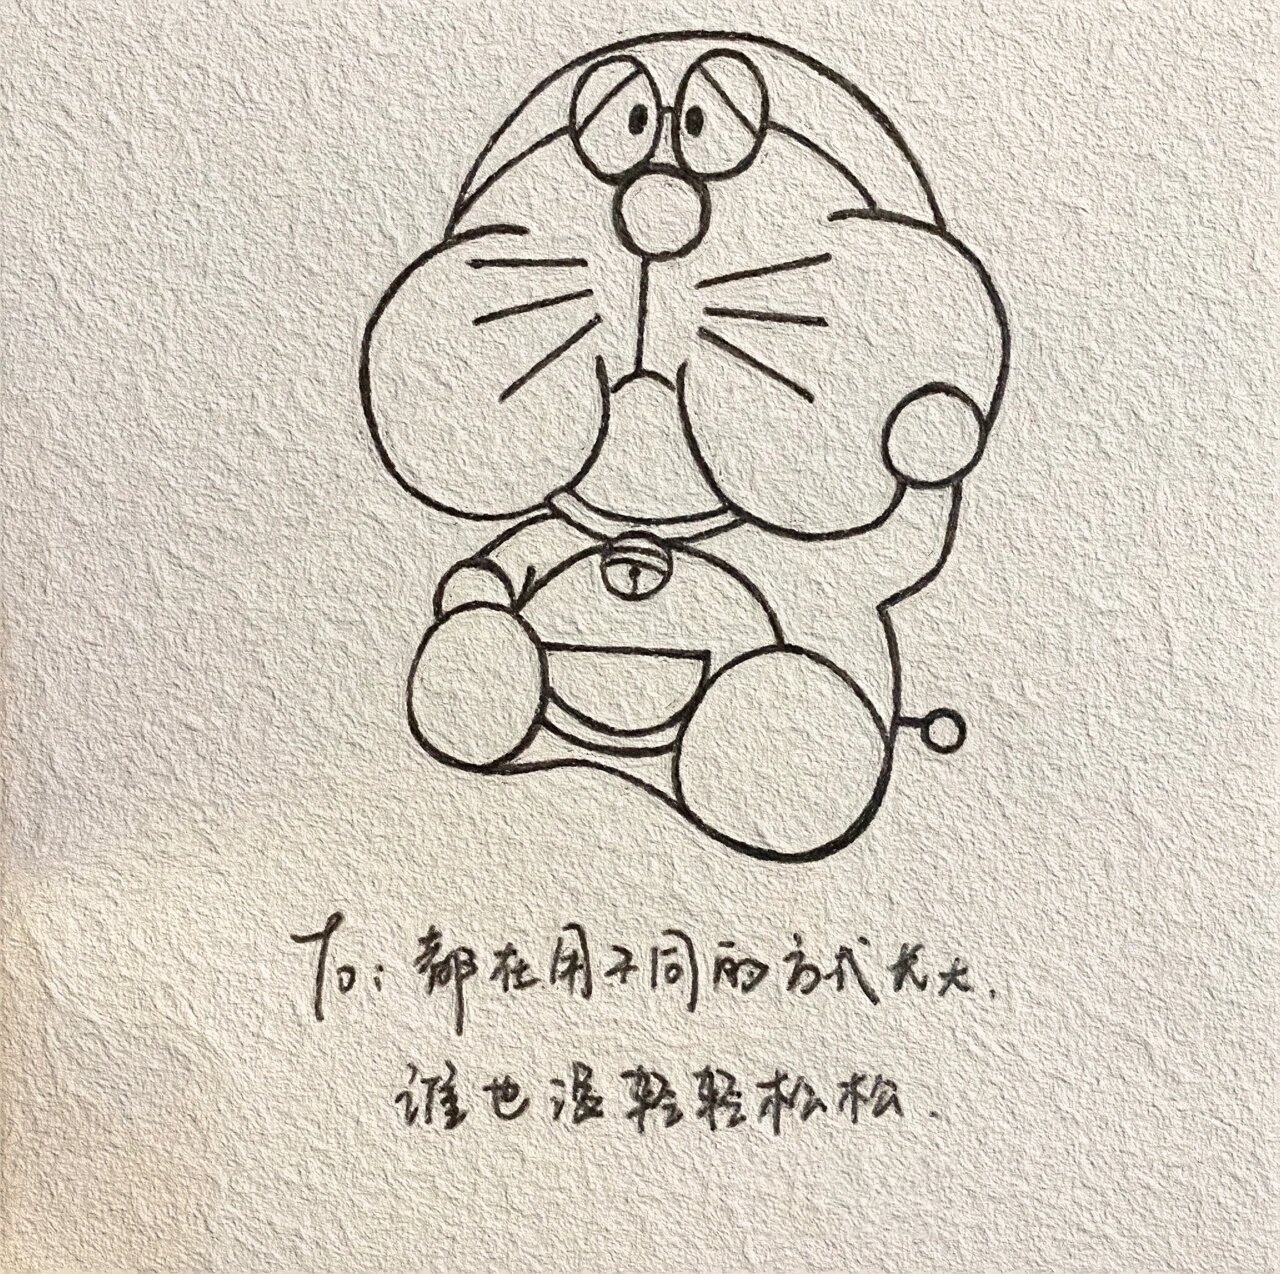 哆啦a梦系列简笔画(励志语录)